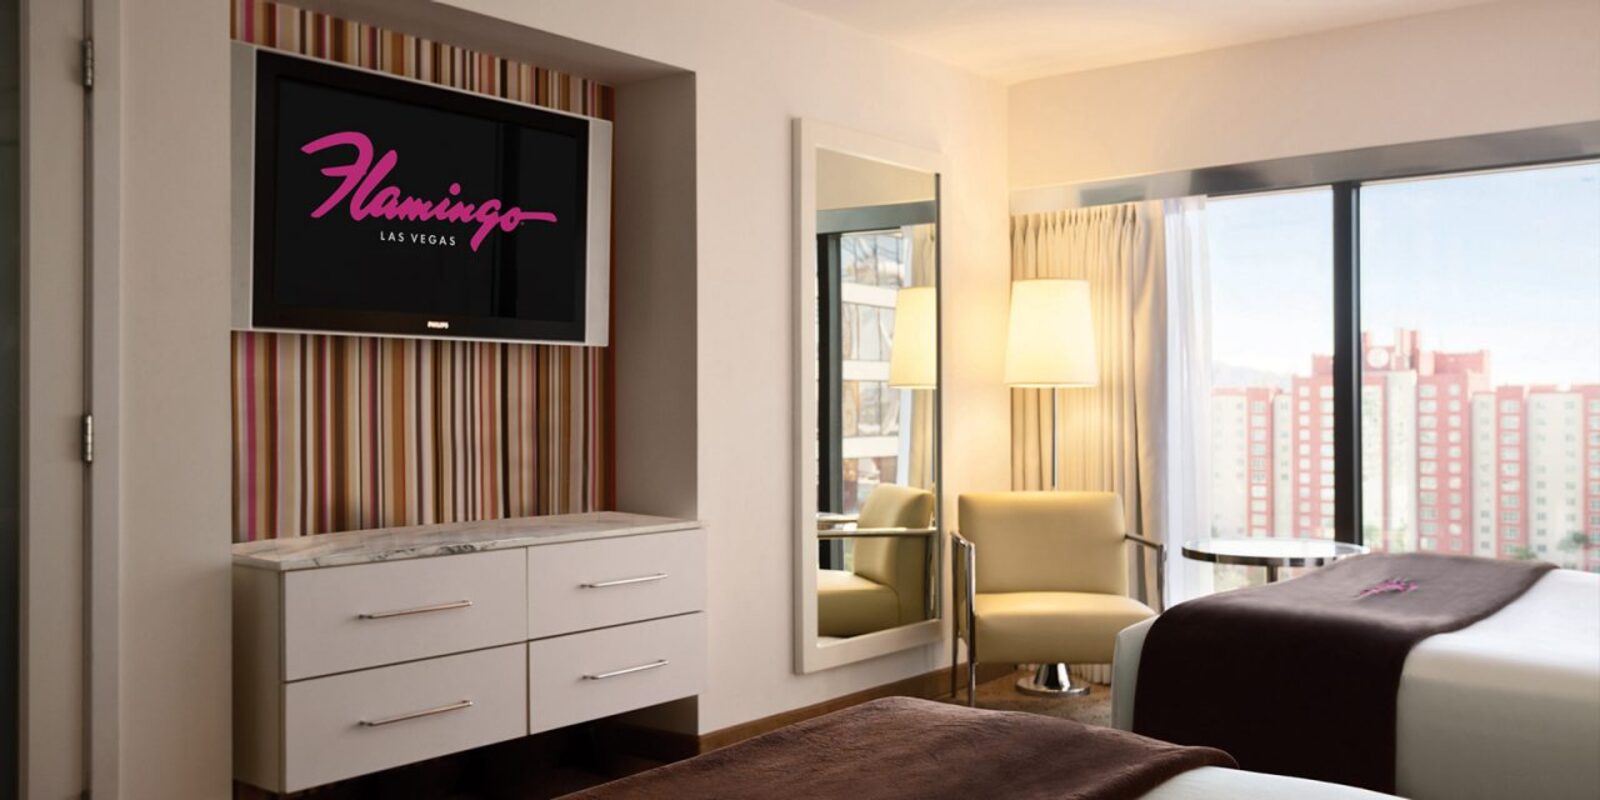 Las Vegas Hotel Rooms & Suites - Flamingo Las Vegas Hotel & Casino